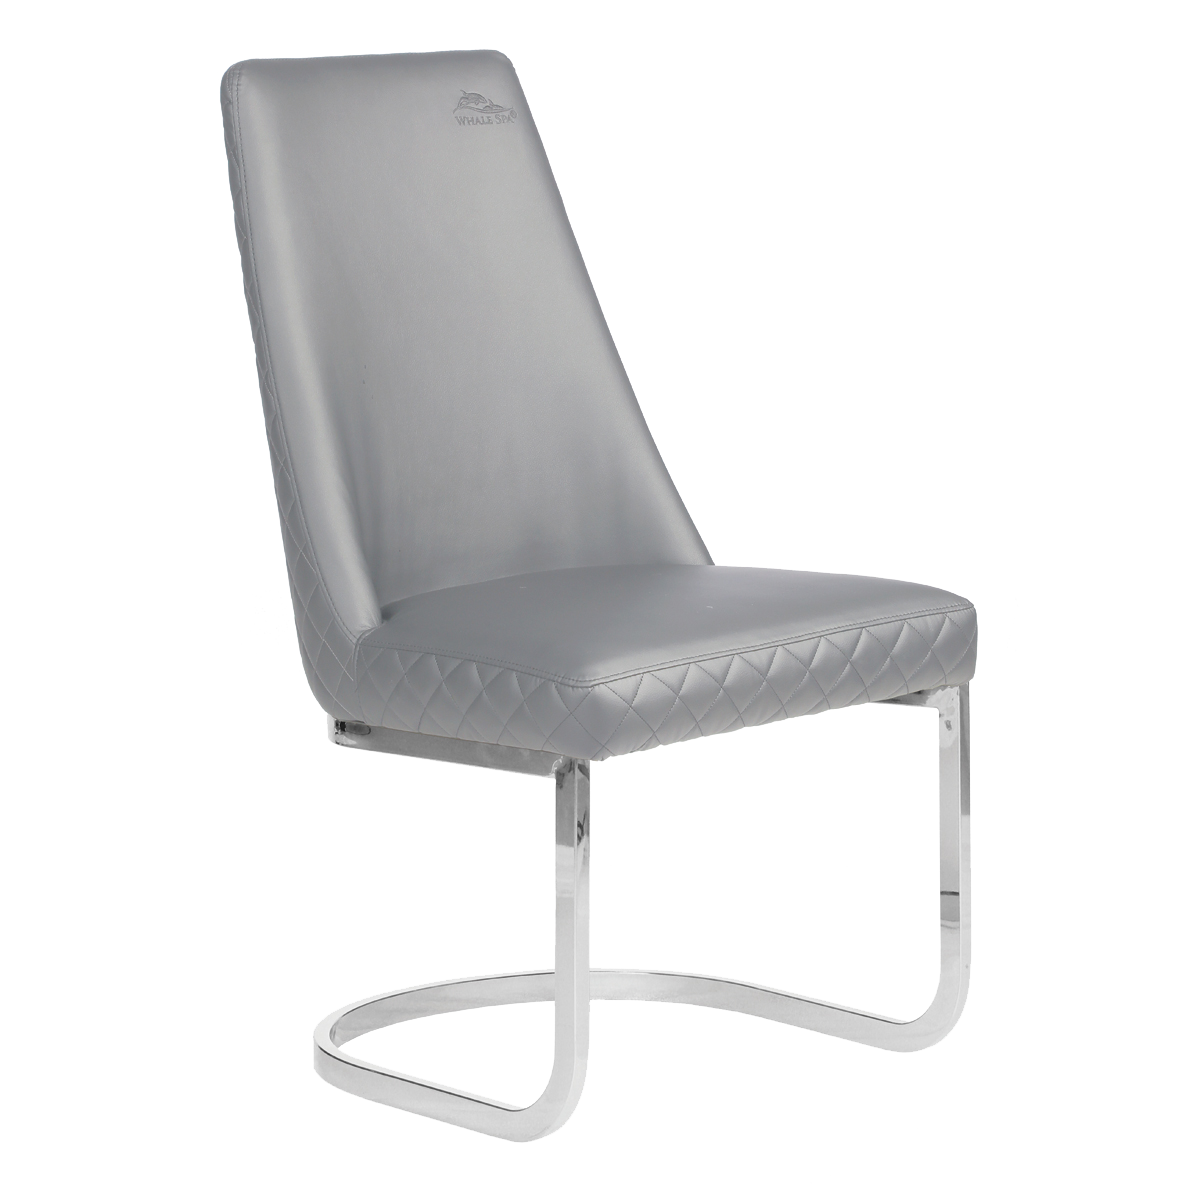 Whale Spa Gray Customer Chair Diamond 8109 Nail Salon Customer Chair | Salon and Spa Furniture